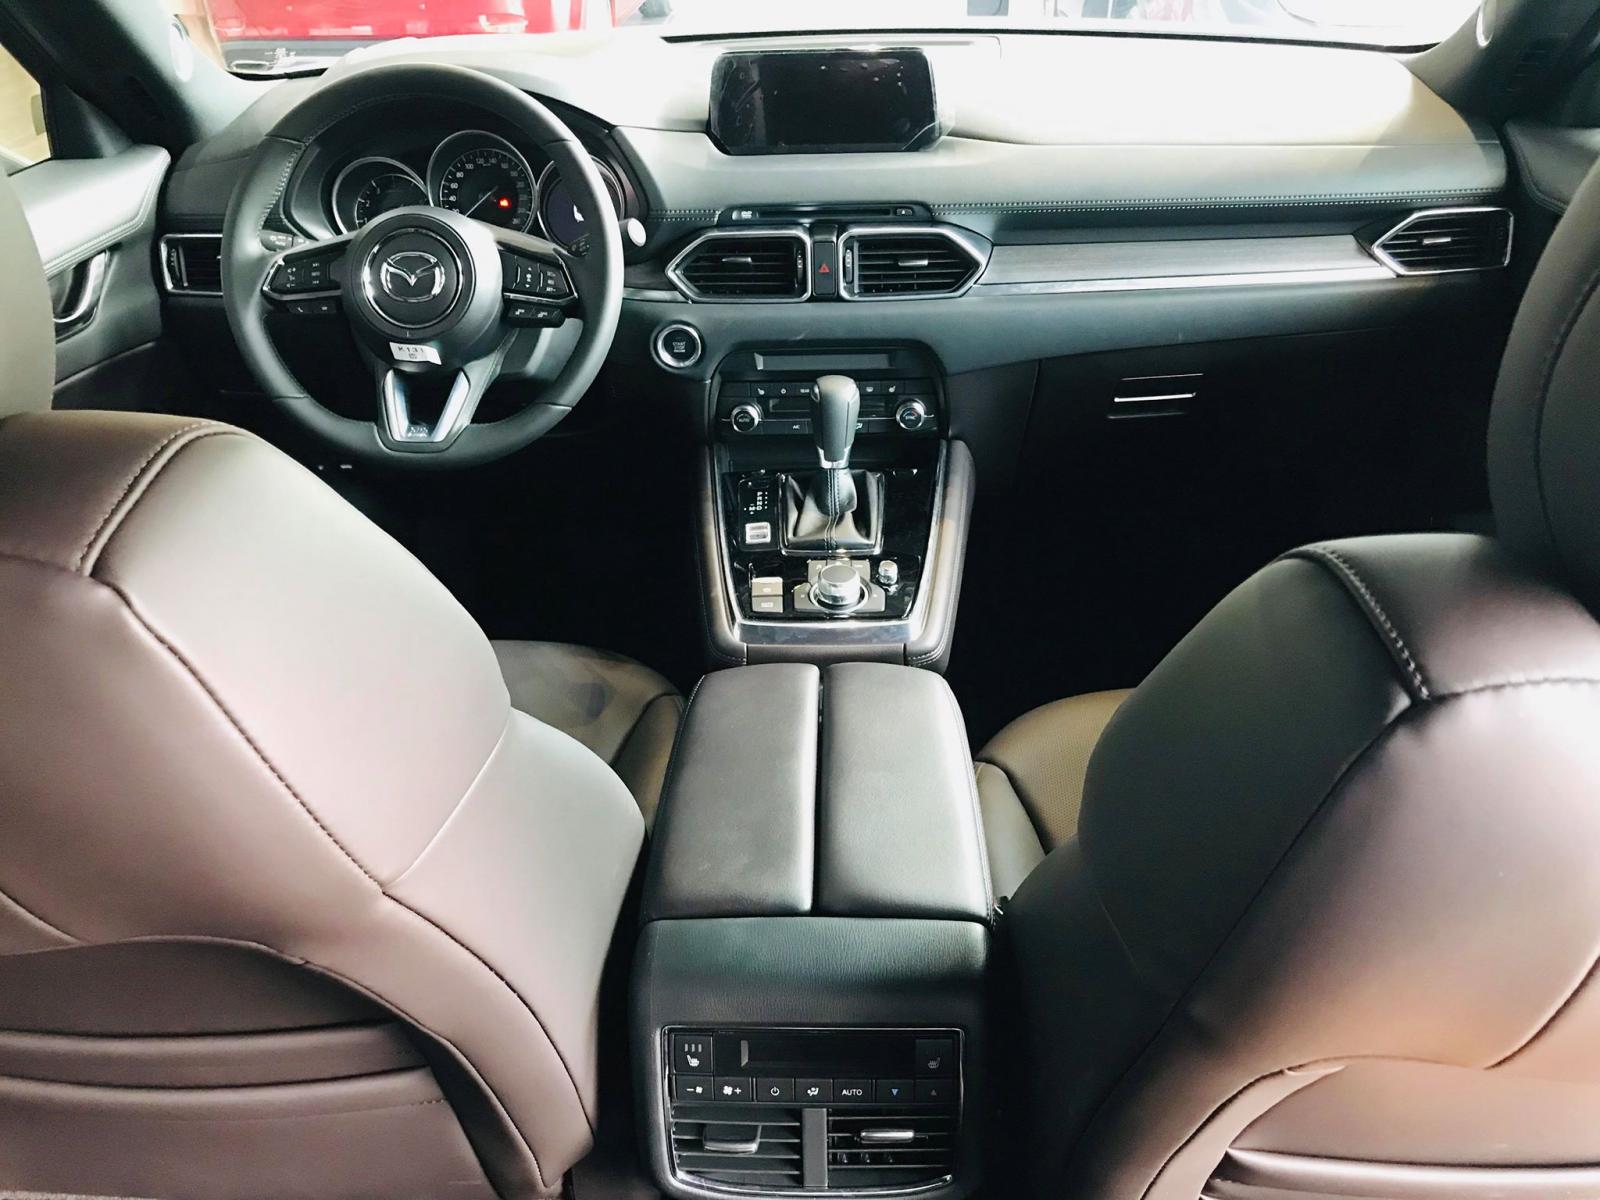 Mazda Mazda khác 2019 - Giảm ngay 50tr cho CX8 - nhận xe ngay với 240tr